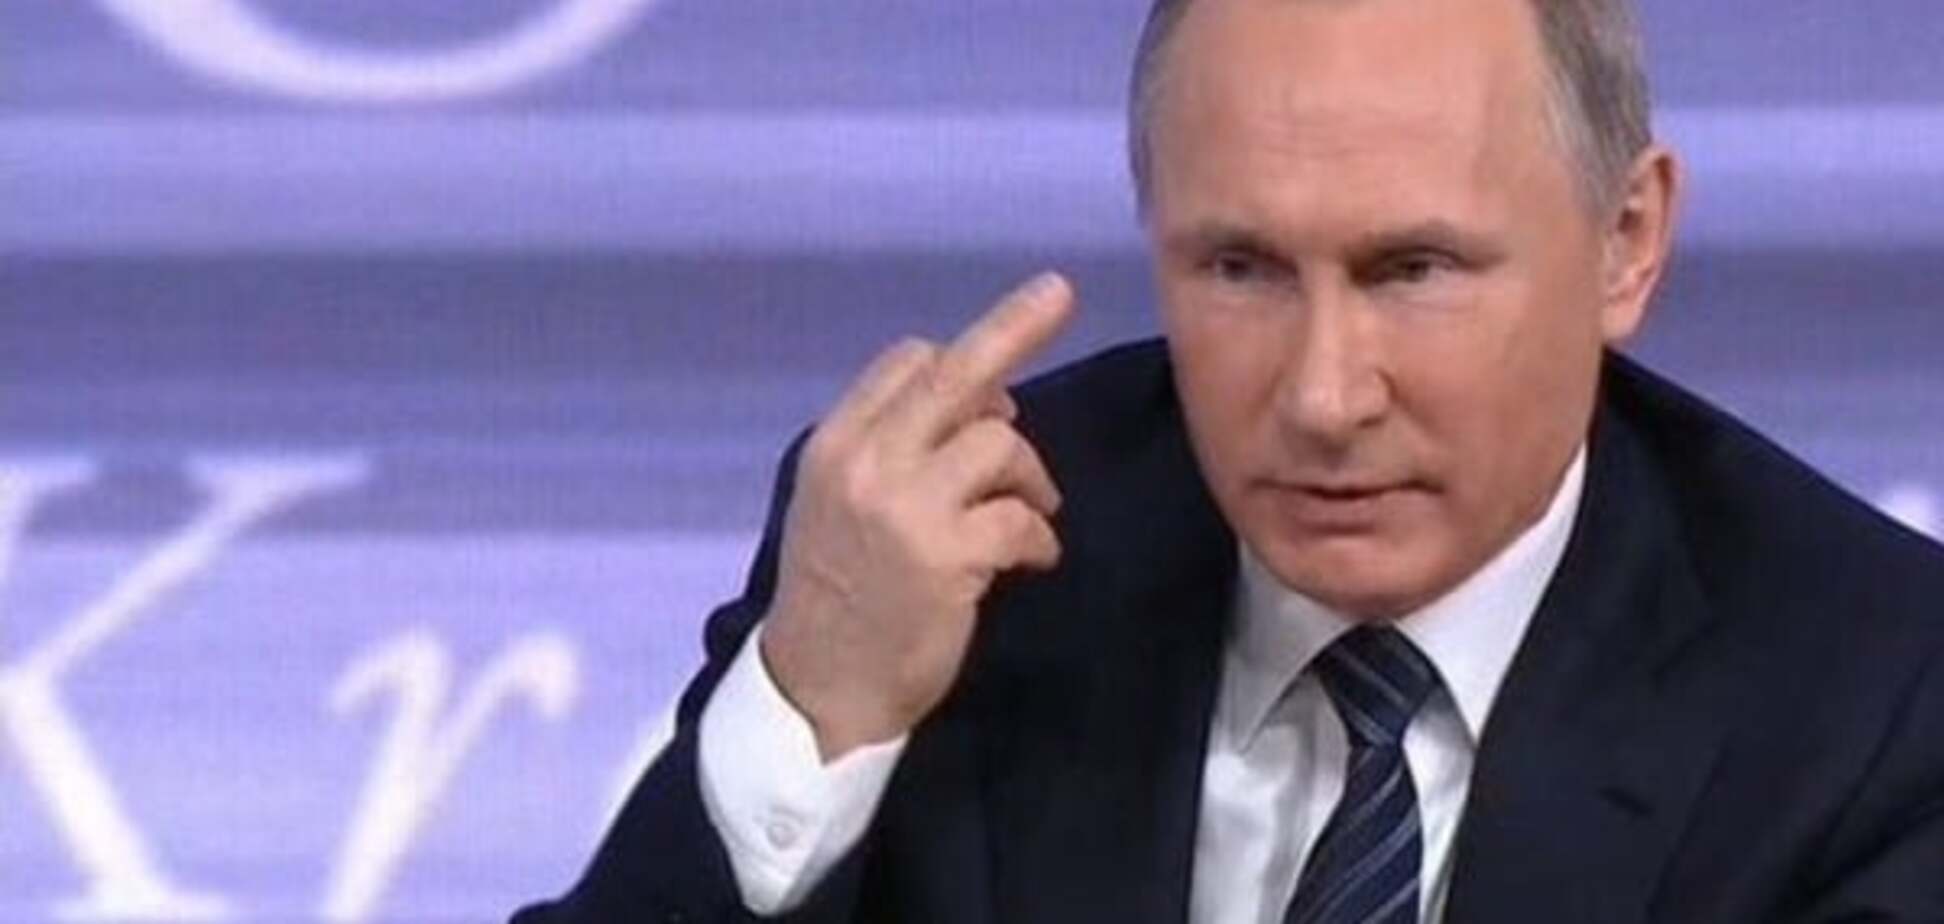 Непристойна відповідь на всі запитання: палець Путіна підірвав соцмережі. Опубліковано фото